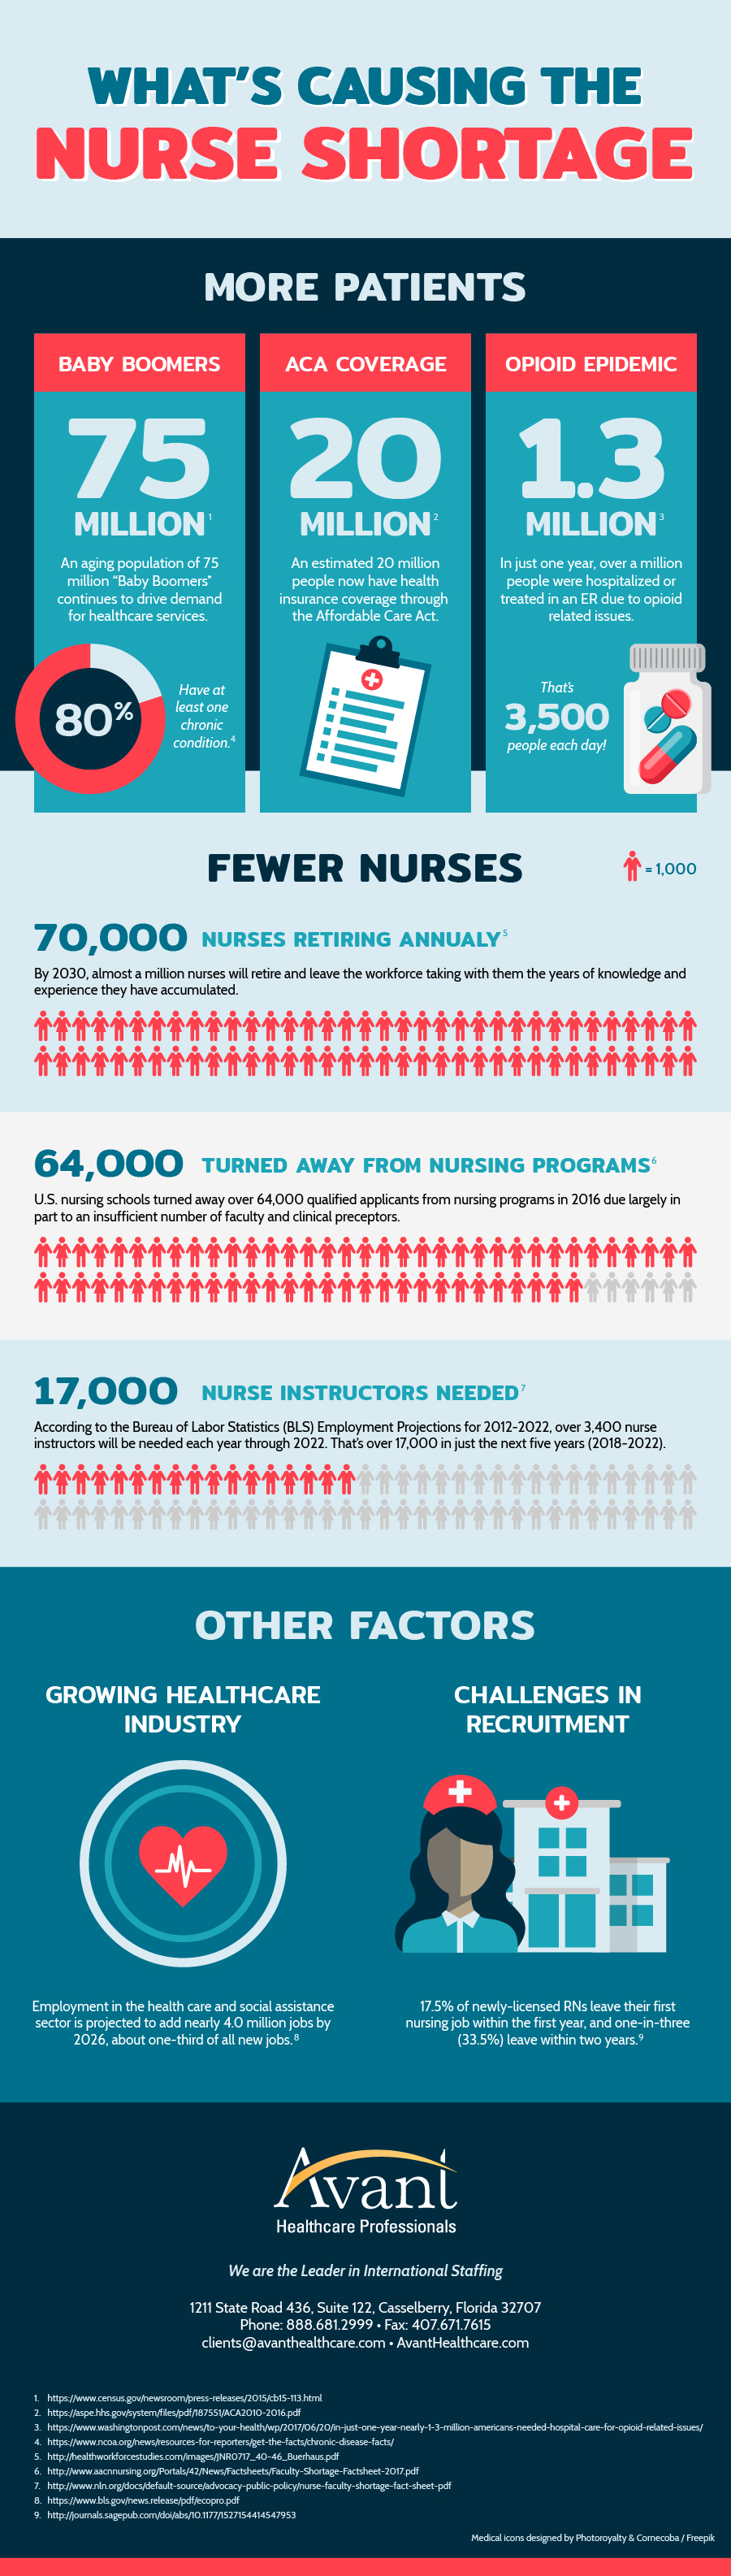 Nursing Shortage Infographic